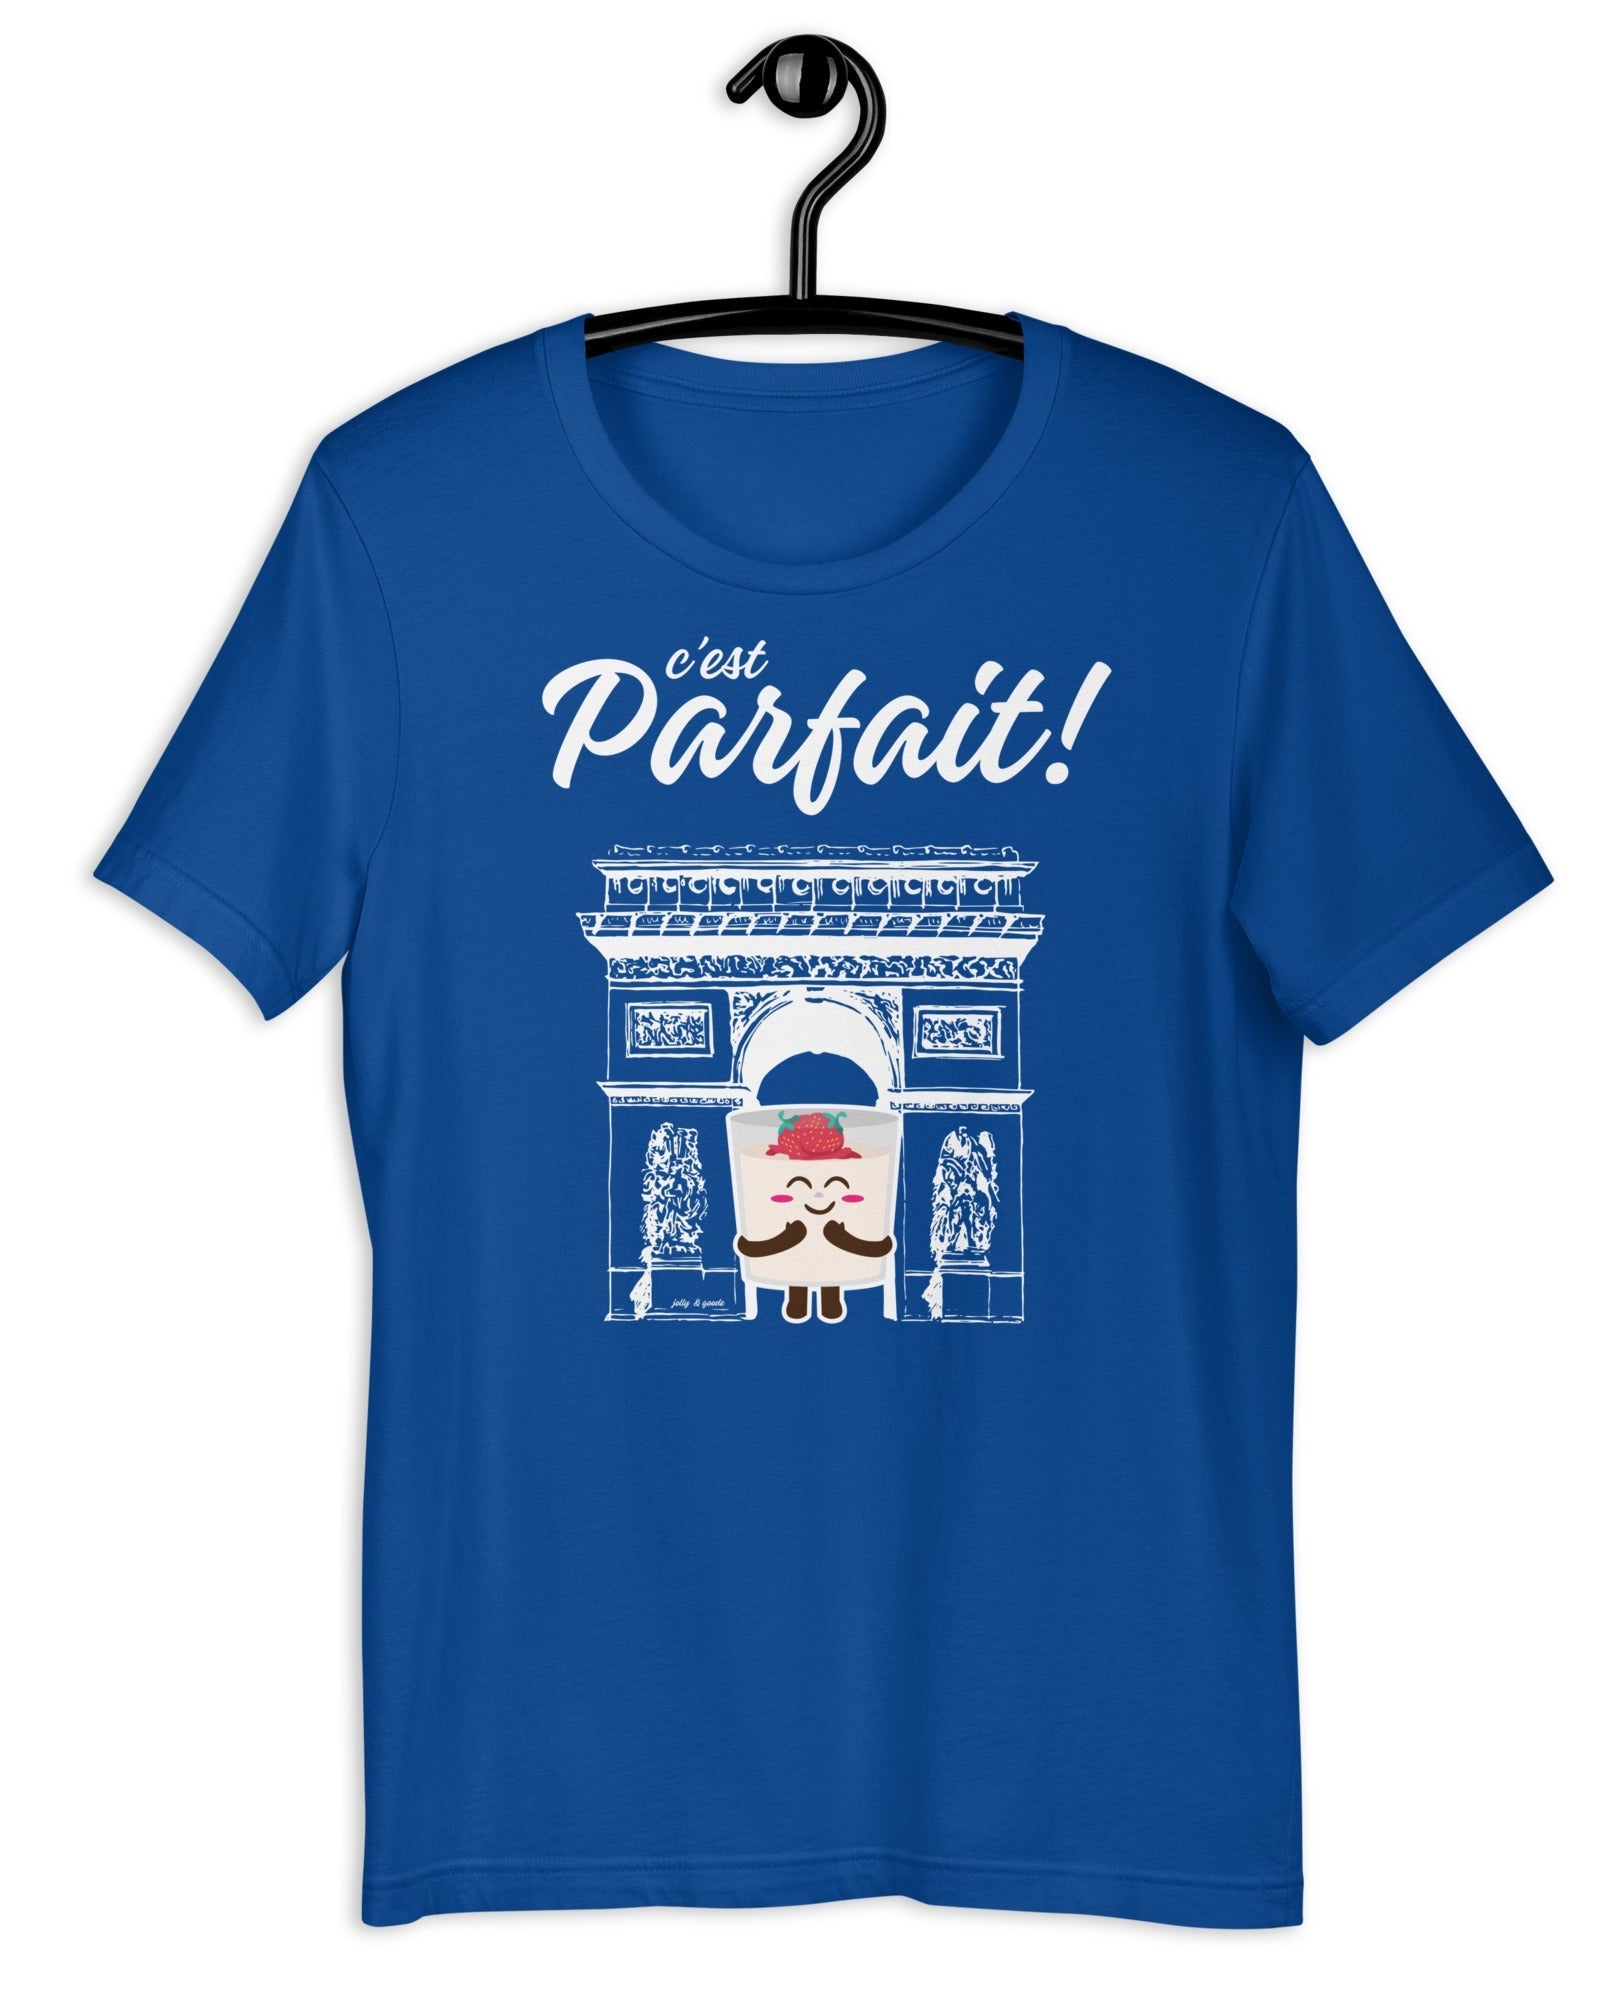 C'est Parfait! T-shirt | Parfait Arch True Royal / S Shirts & Tops Jolly & Goode